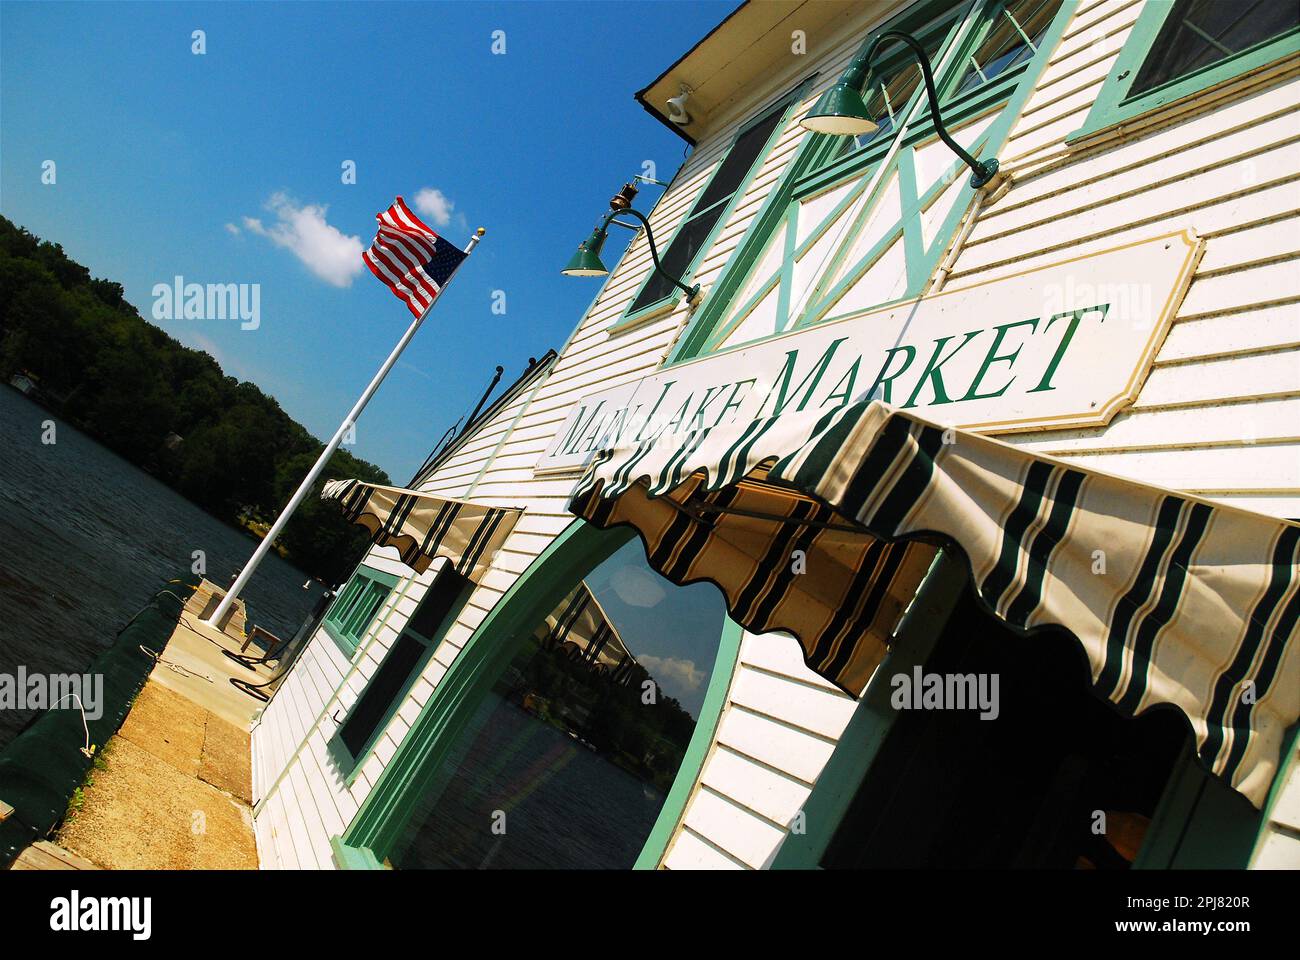 Il Main Lake Market si trova sul lungomare del lago Hopatcong, New Jersey, e serve i turisti estivi con un negozio generico Foto Stock